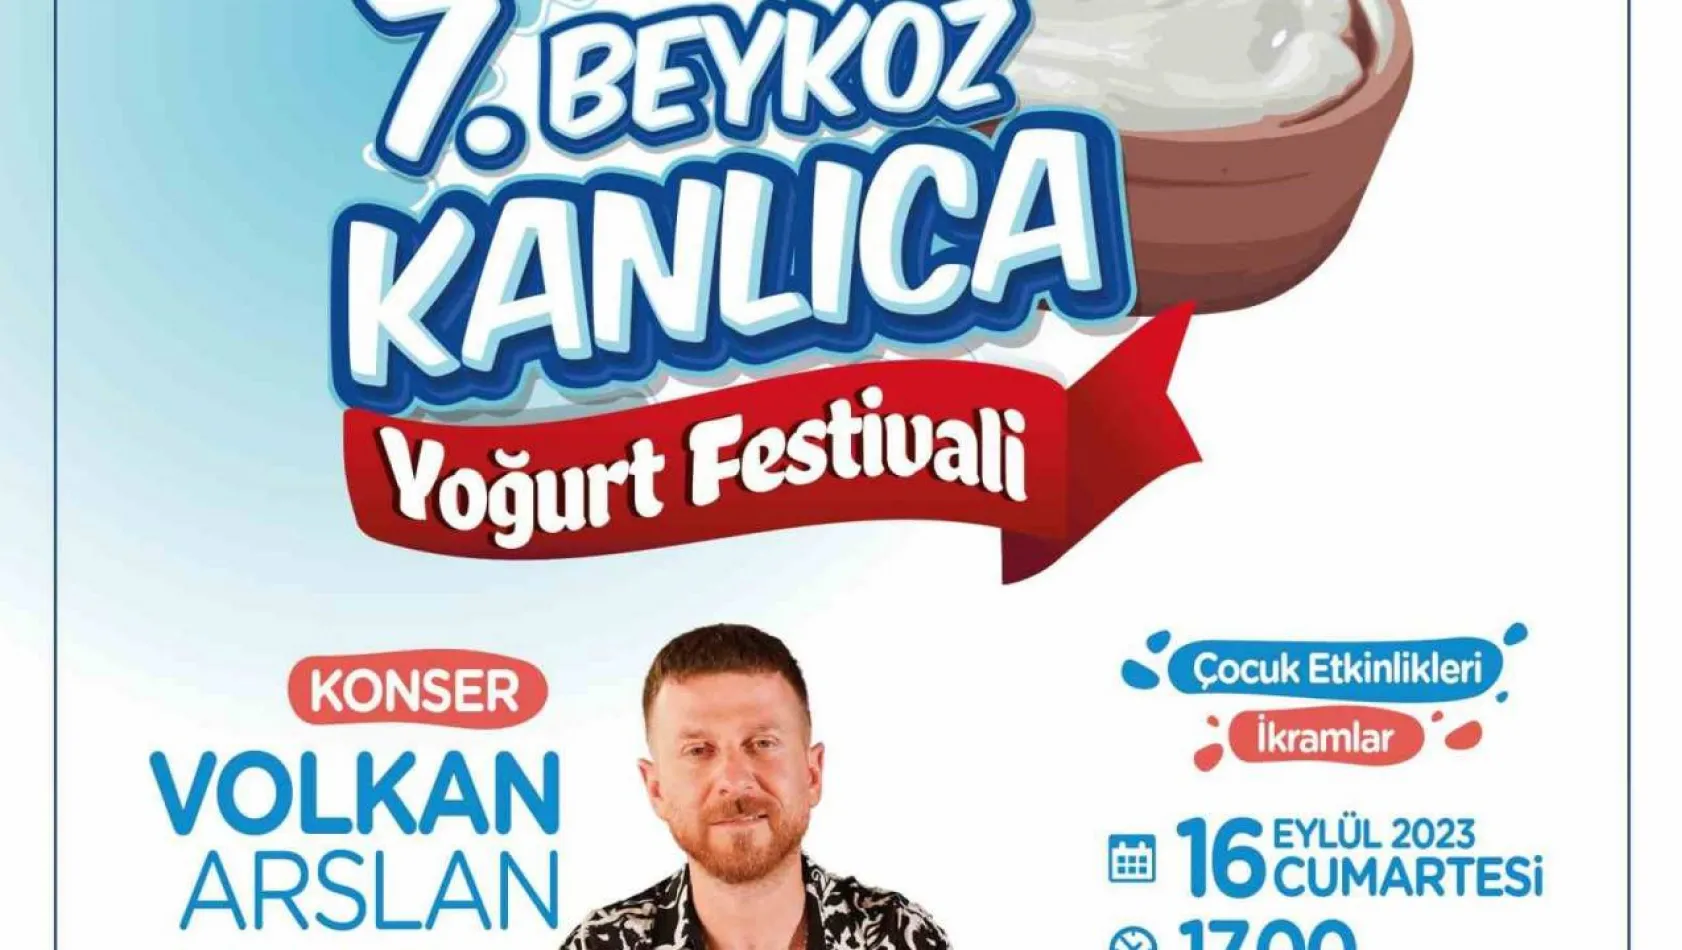 Boğaz'da bir lezzet klasiği: '7. beykoz kanlıca yoğurt festivali' başlıyor